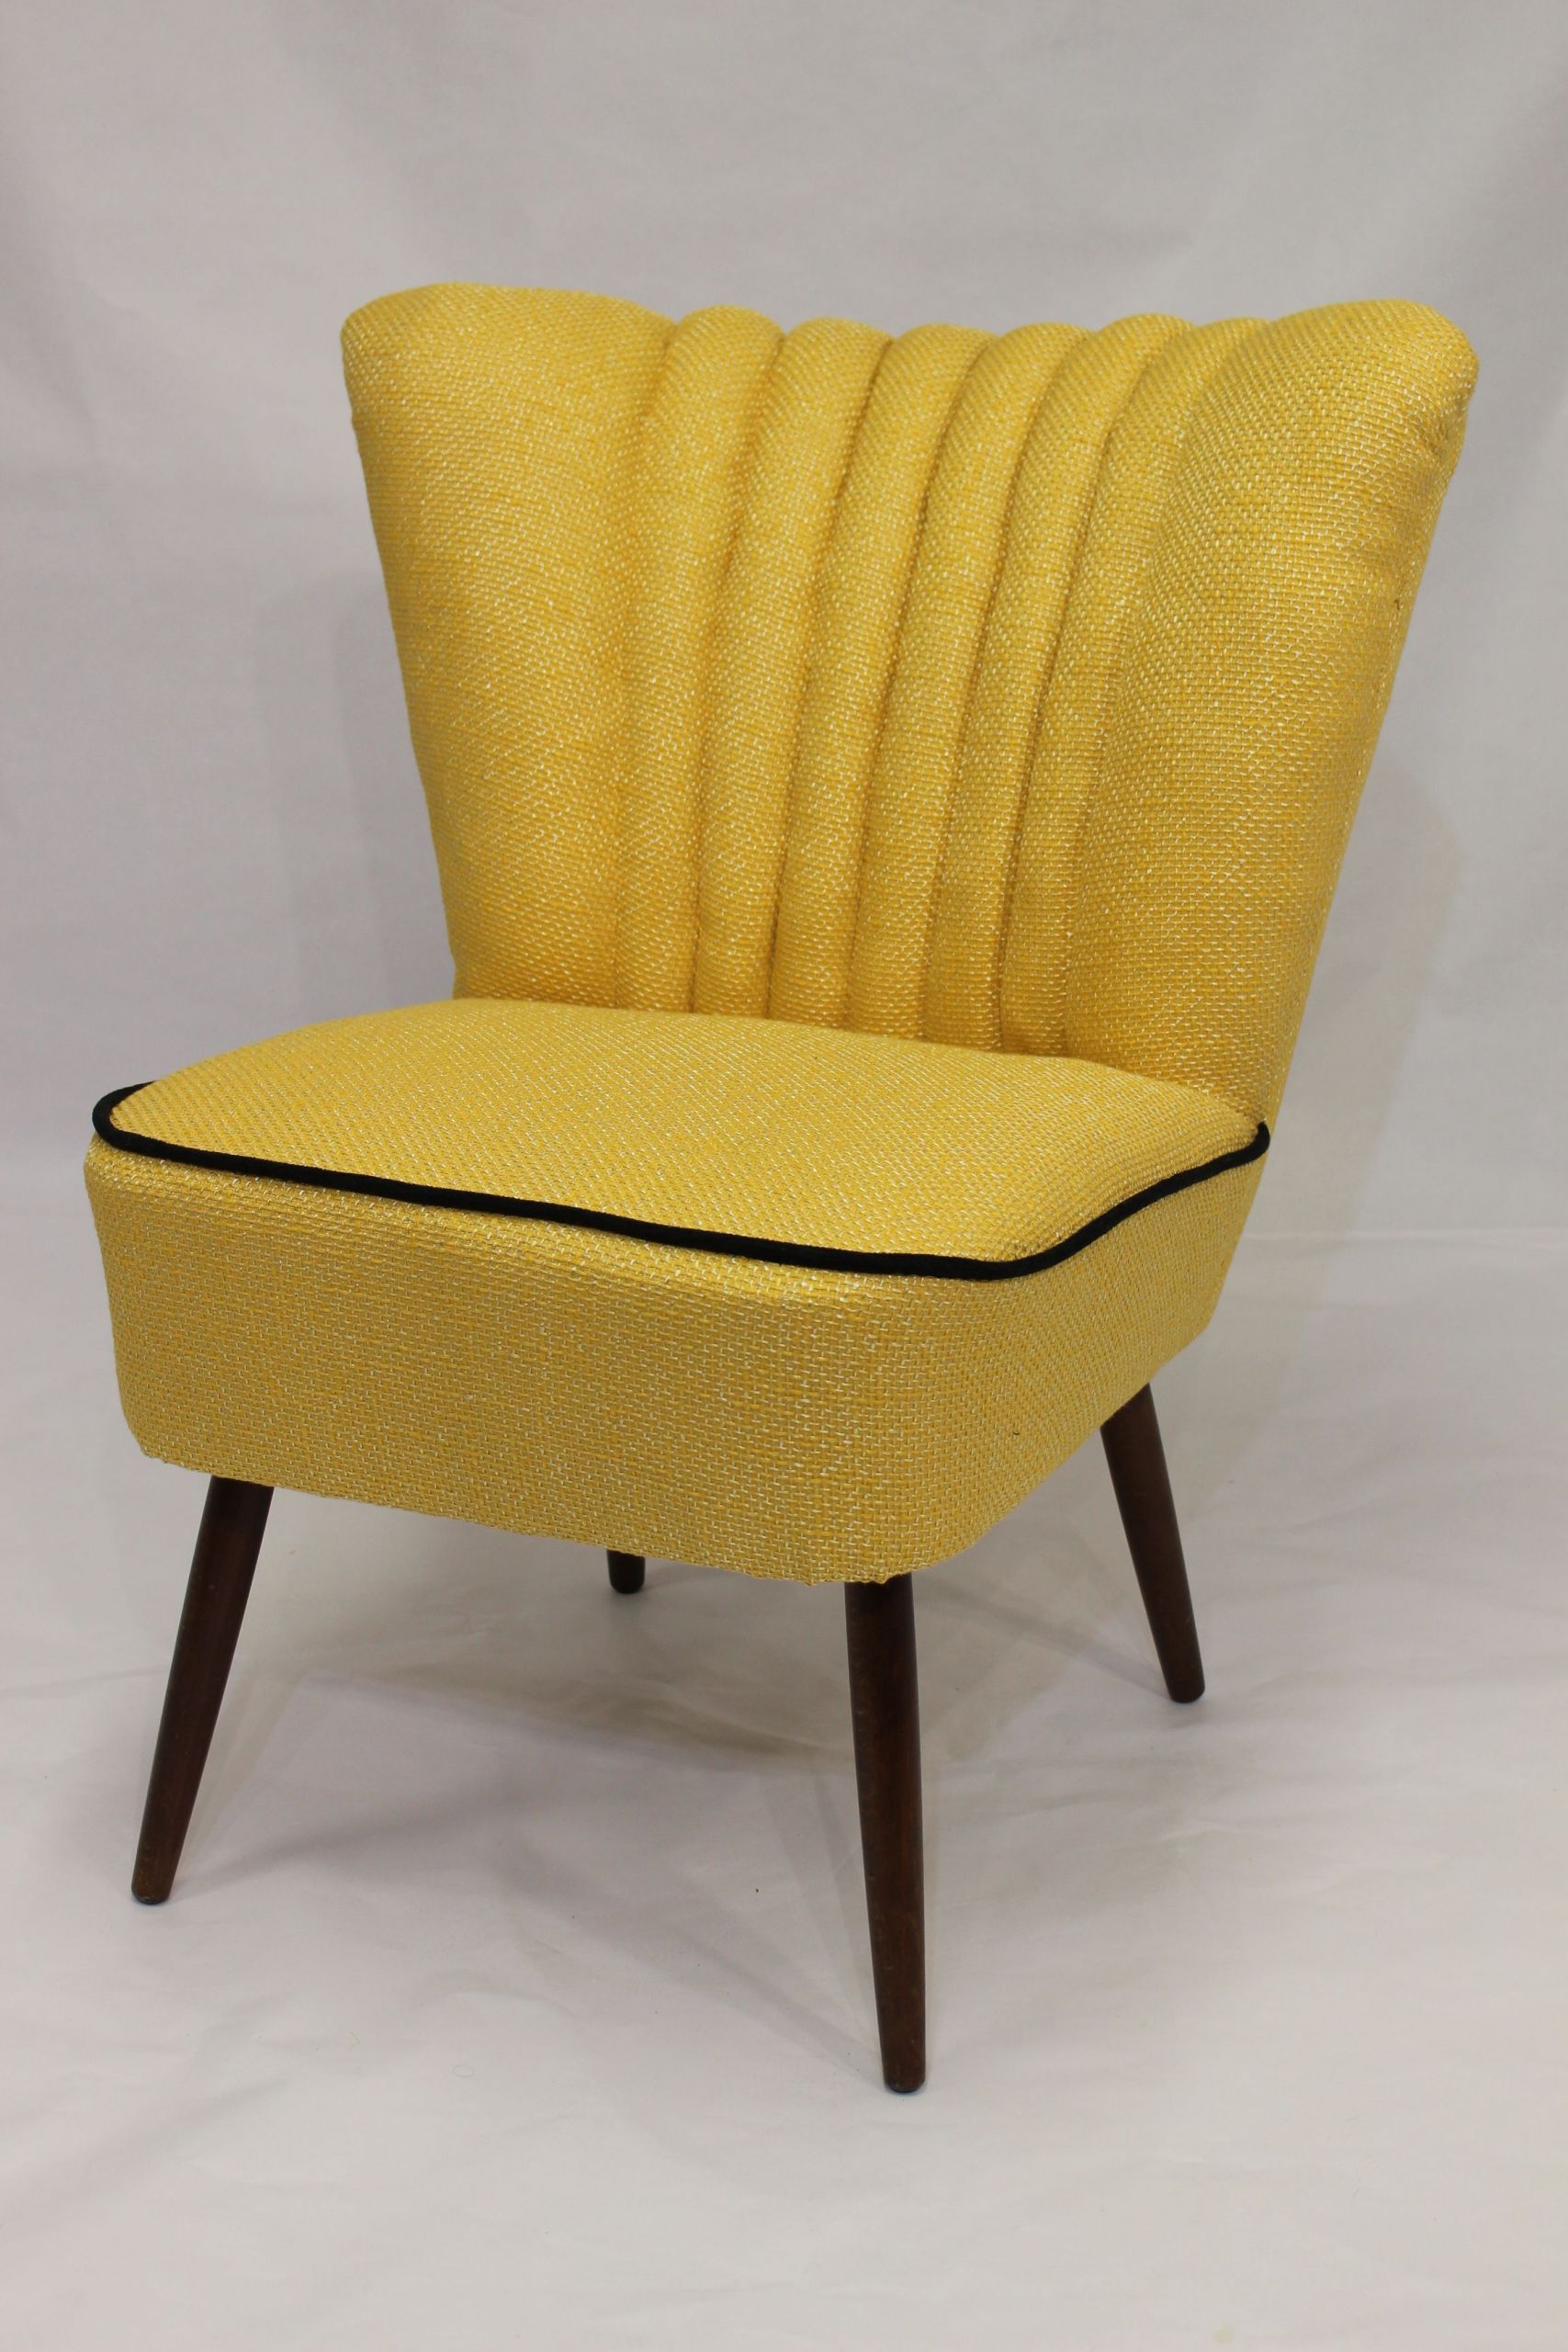 chaise de jardin en resine inspirant fauteuil cocktail vintage des annees 50 quottissu lelievre de chaise de jardin en resine scaled